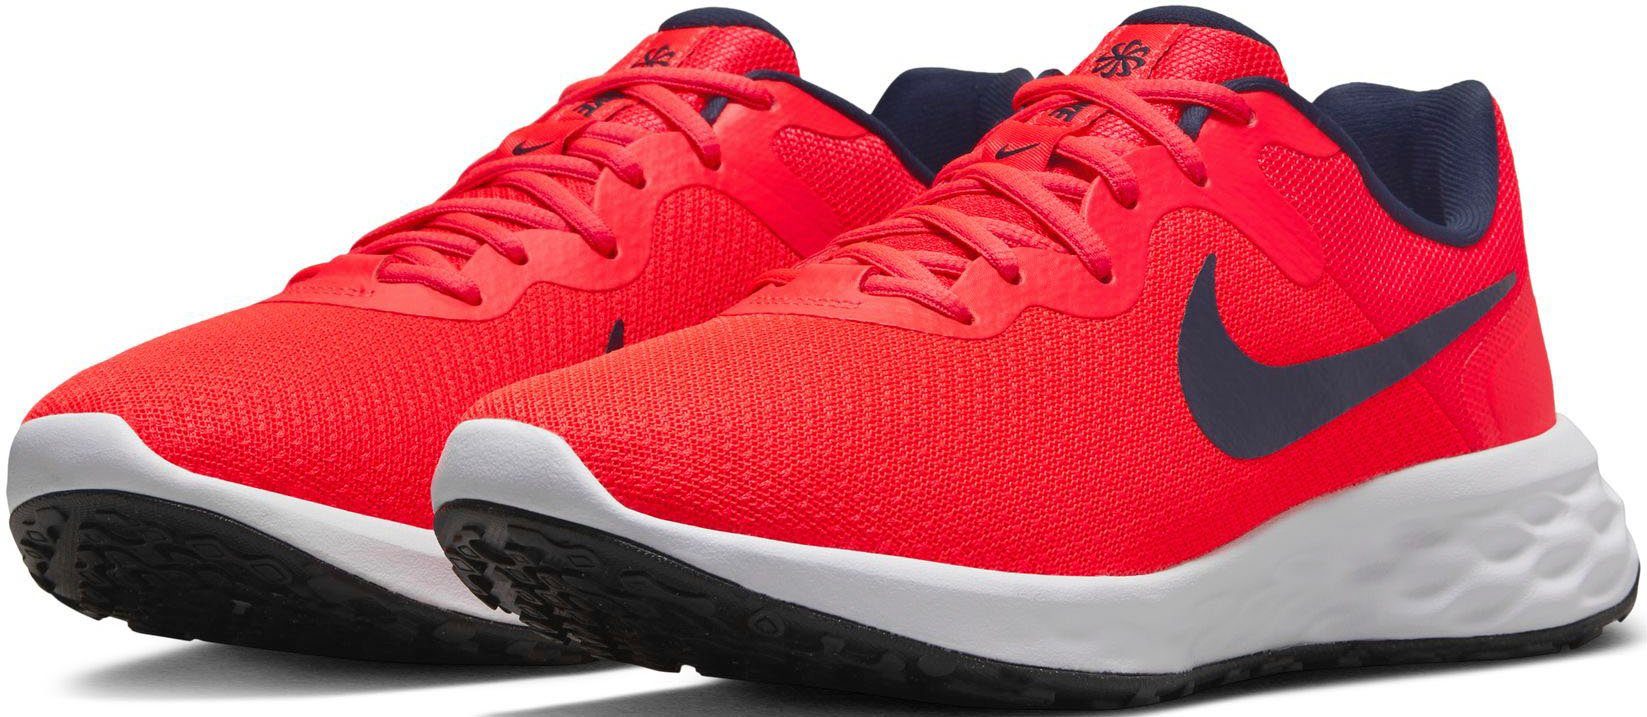 Rote Nike Damensneaker online kaufen | OTTO